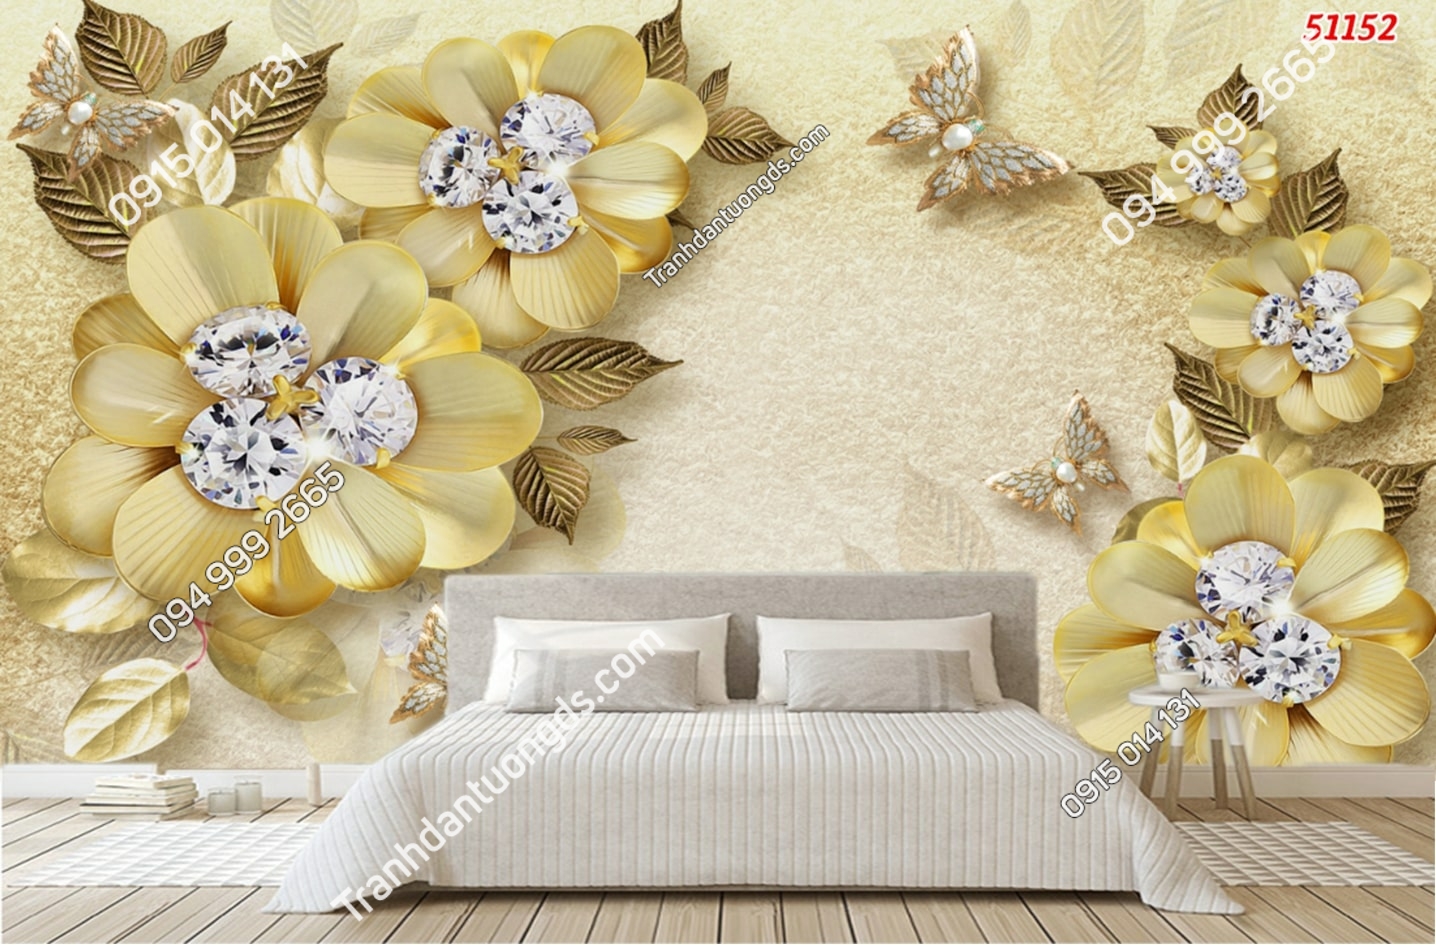 Tranh dán tường hoa 3D vàng kim cương 51152